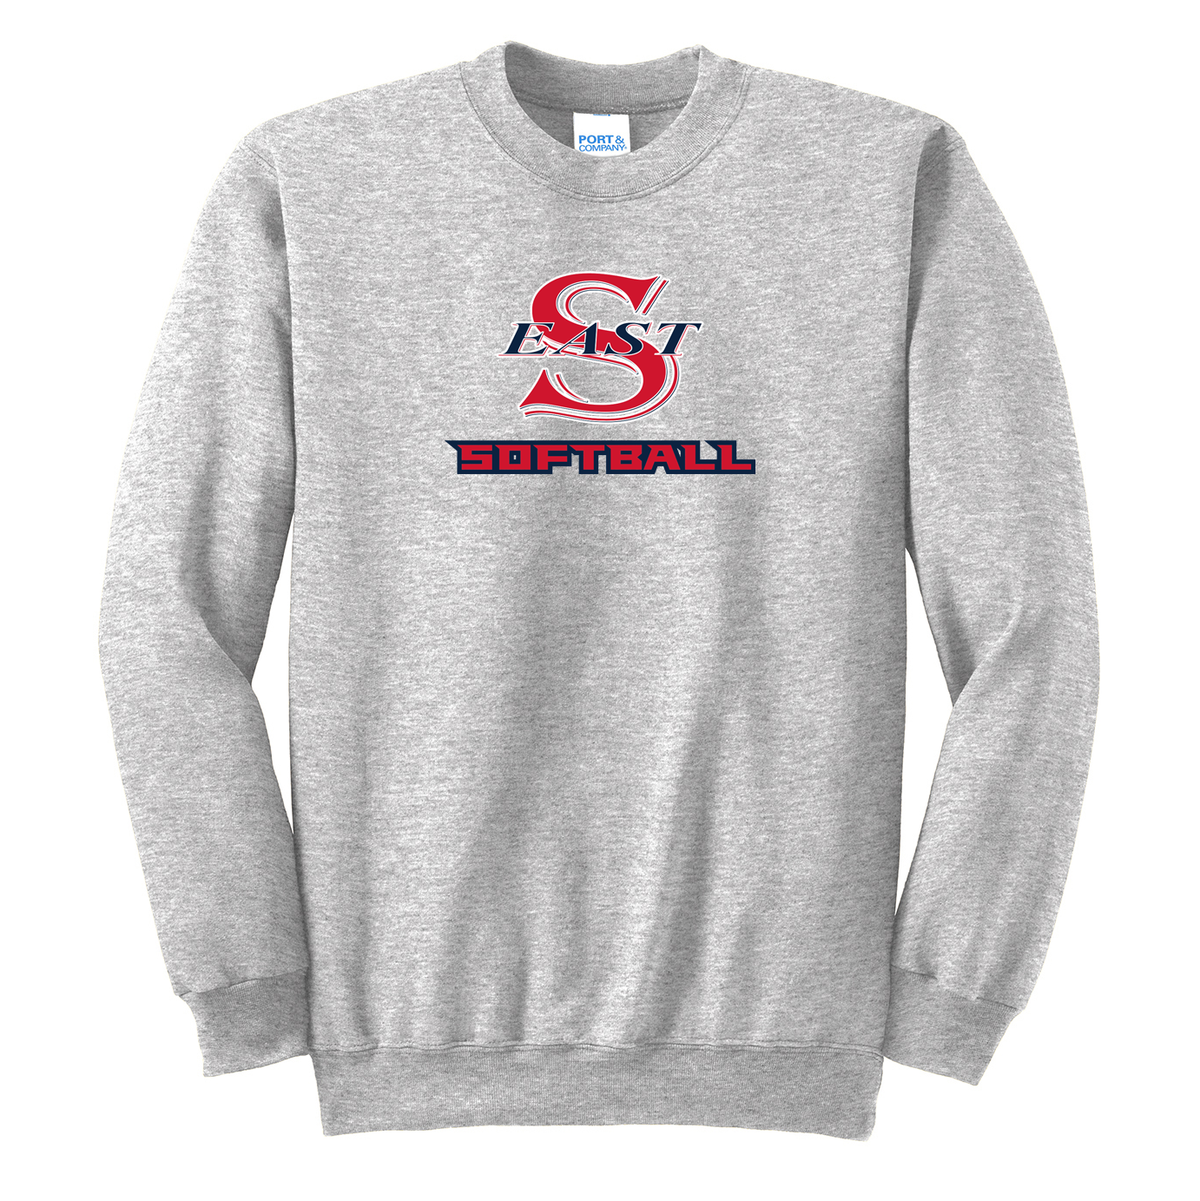 Smithtown East Softball Crew Neck Sweater